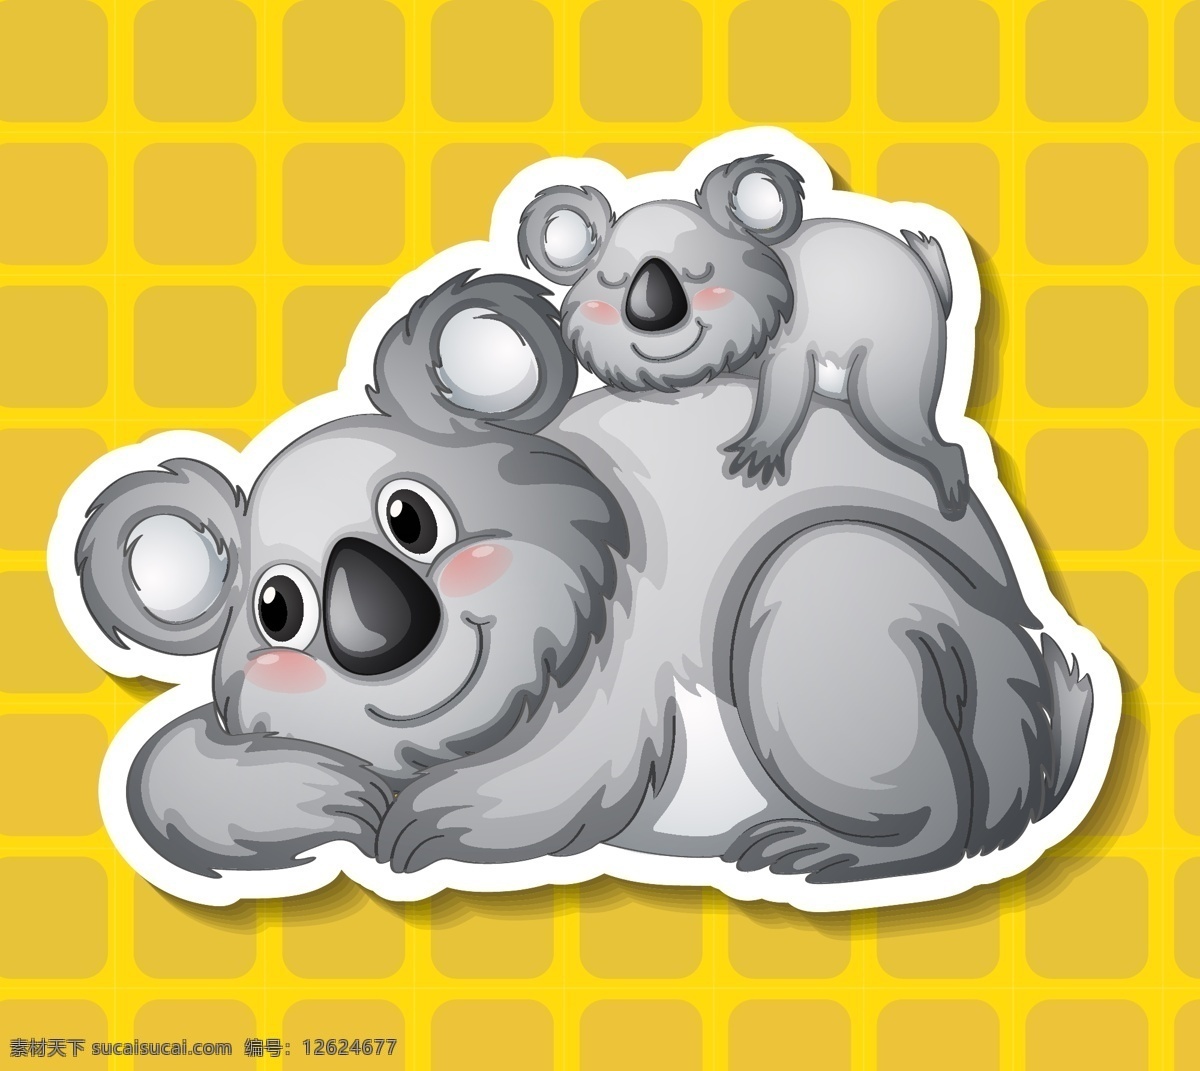 卡通考拉熊 考拉 熊 可爱 野生 哺乳动物 澳大利亚 野生动物 快乐 滑稽 剪贴画 卡通动物生物 卡通设计